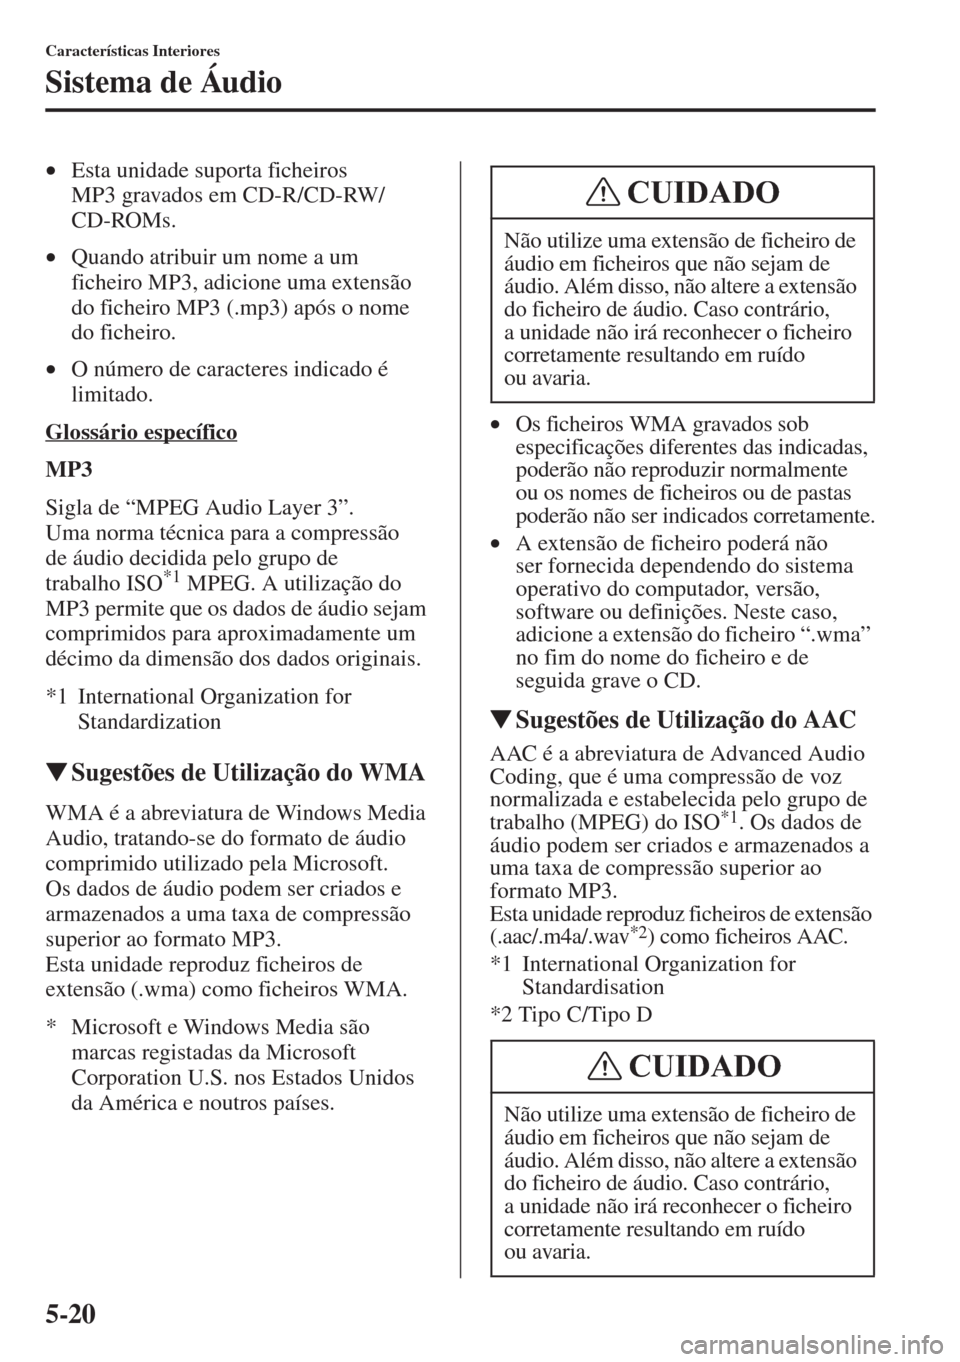 MAZDA MODEL CX-5 2015  Manual do proprietário (in Portuguese) 5-20
Características Interiores
Sistema de Áudio
•Esta unidade suporta ficheiros 
MP3 gravados em CD-R/CD-RW/
CD-ROMs. 
•Quando atribuir um nome a um 
ficheiro MP3, adicione uma extensão 
do fi